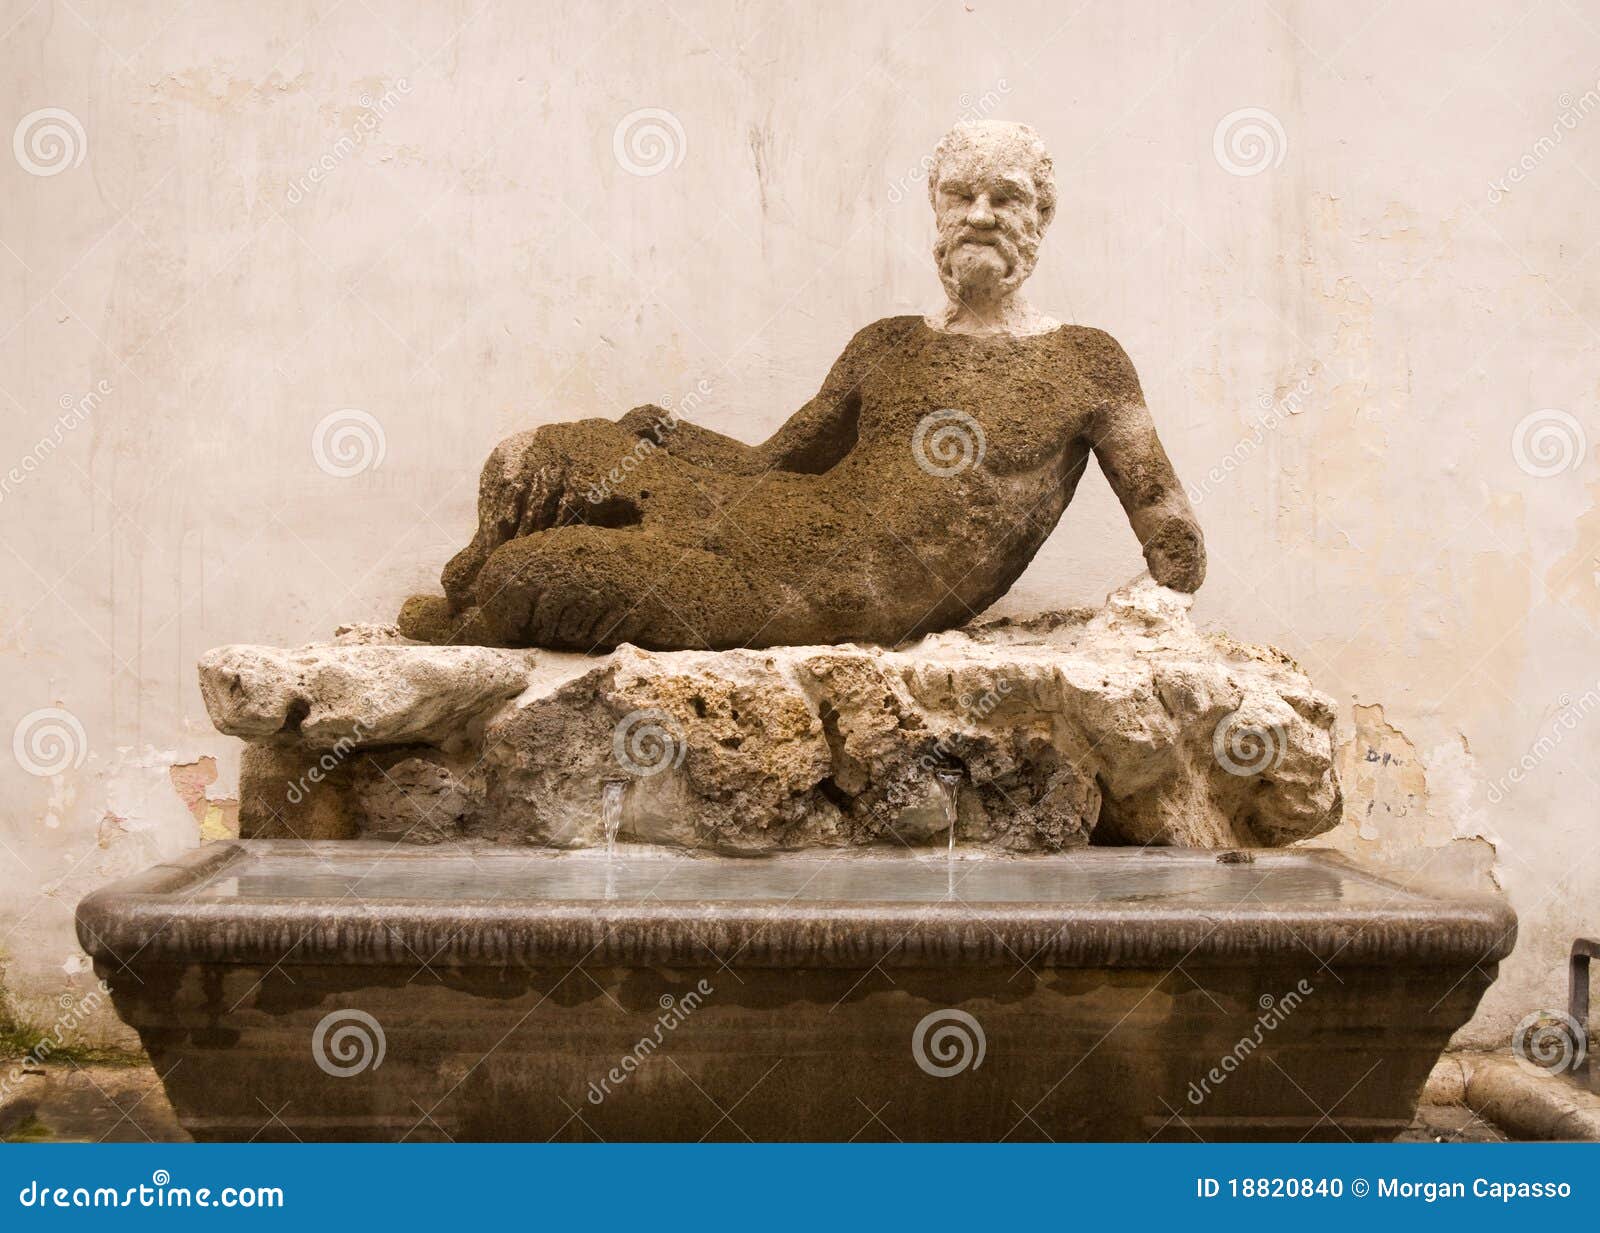 il babuino statue, rome